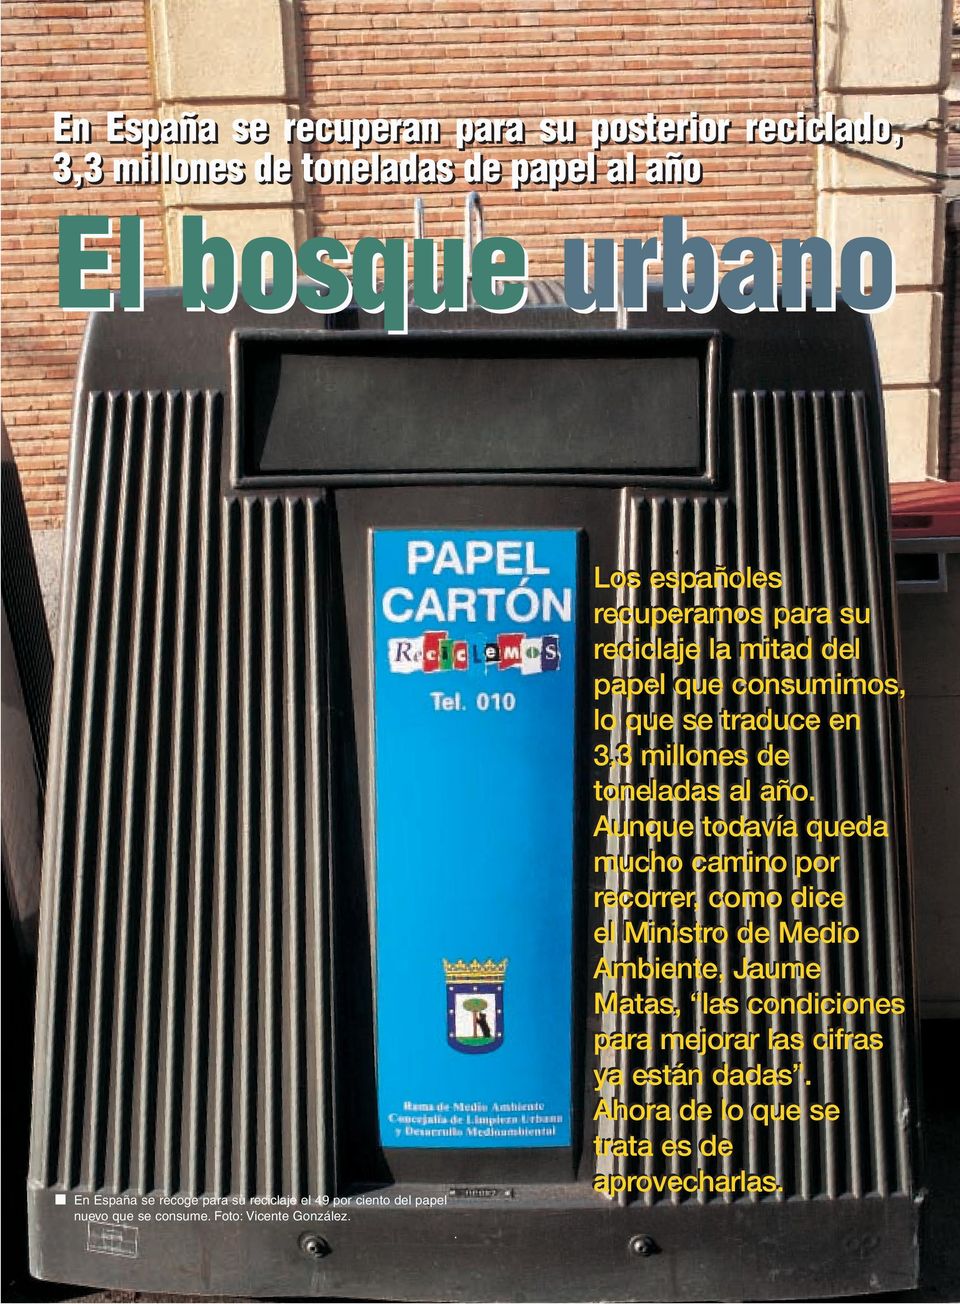 . Los españoles recuperamos para su reciclaje la mitad del papel que consumimos, lo que se traduce en 3,3 millones de toneladas al año.